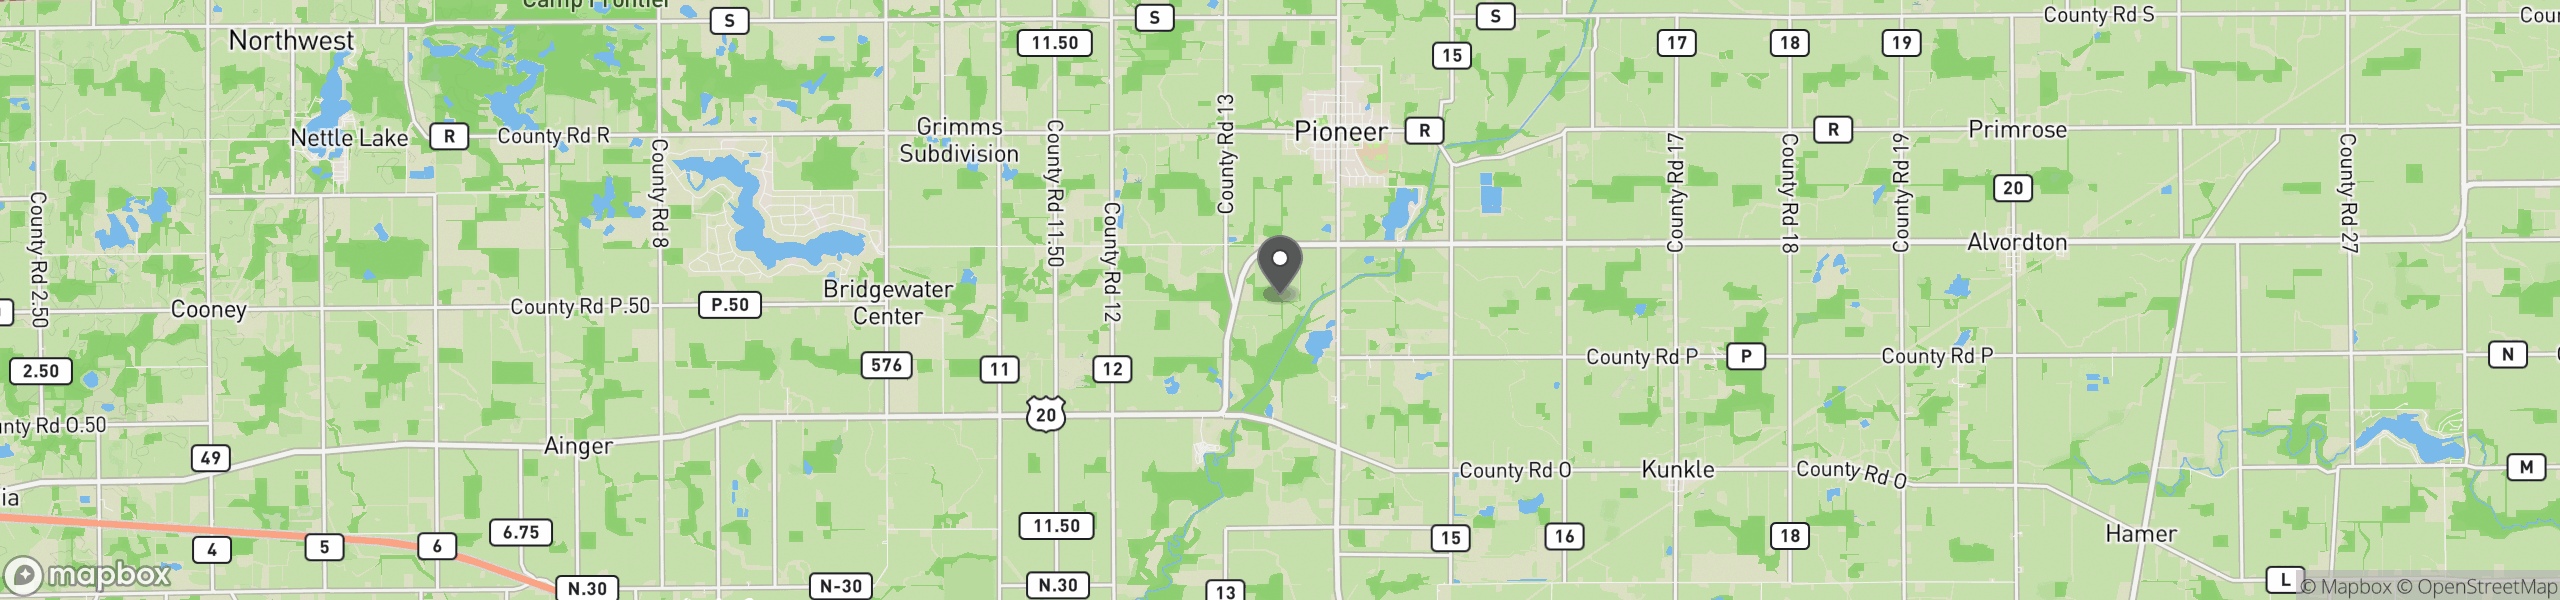 Pioneer, OH